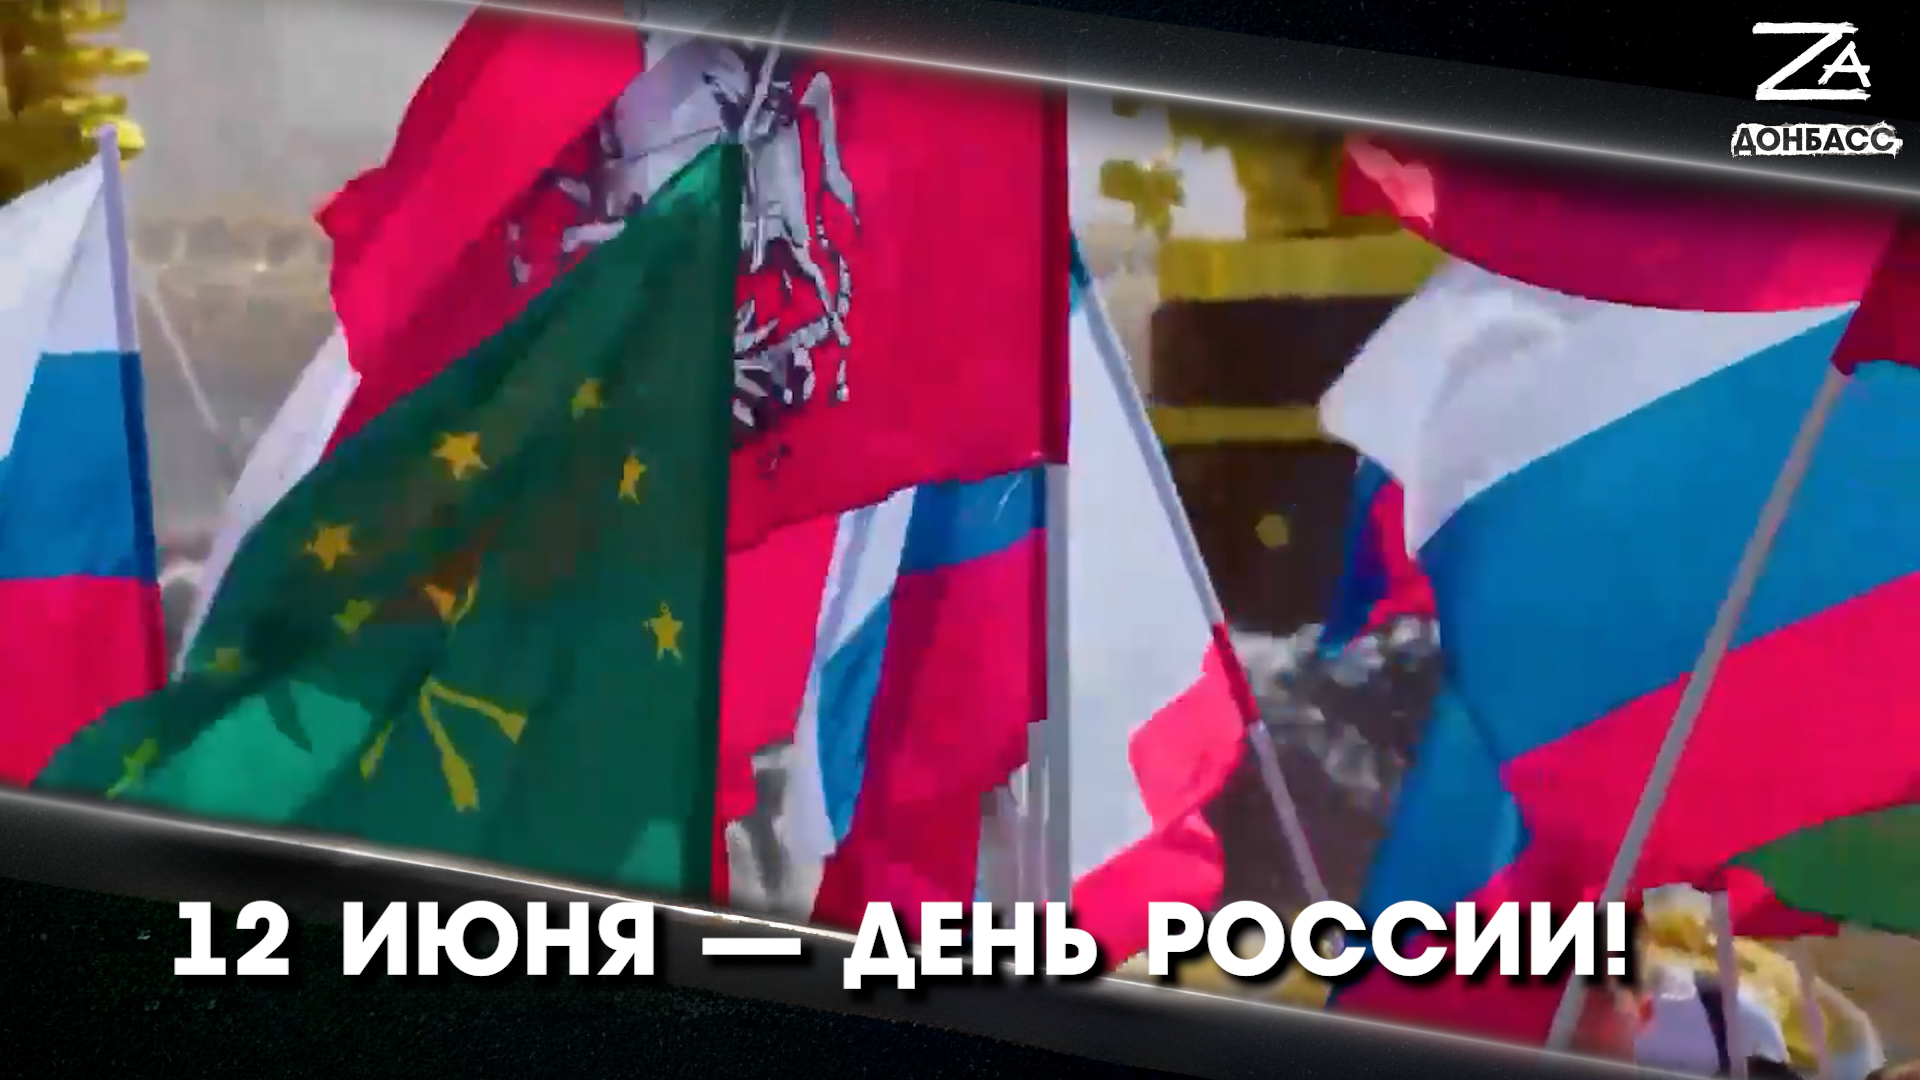 Мы вместе — Россия! ДНР встречает главный государственный праздник в составе РФ!